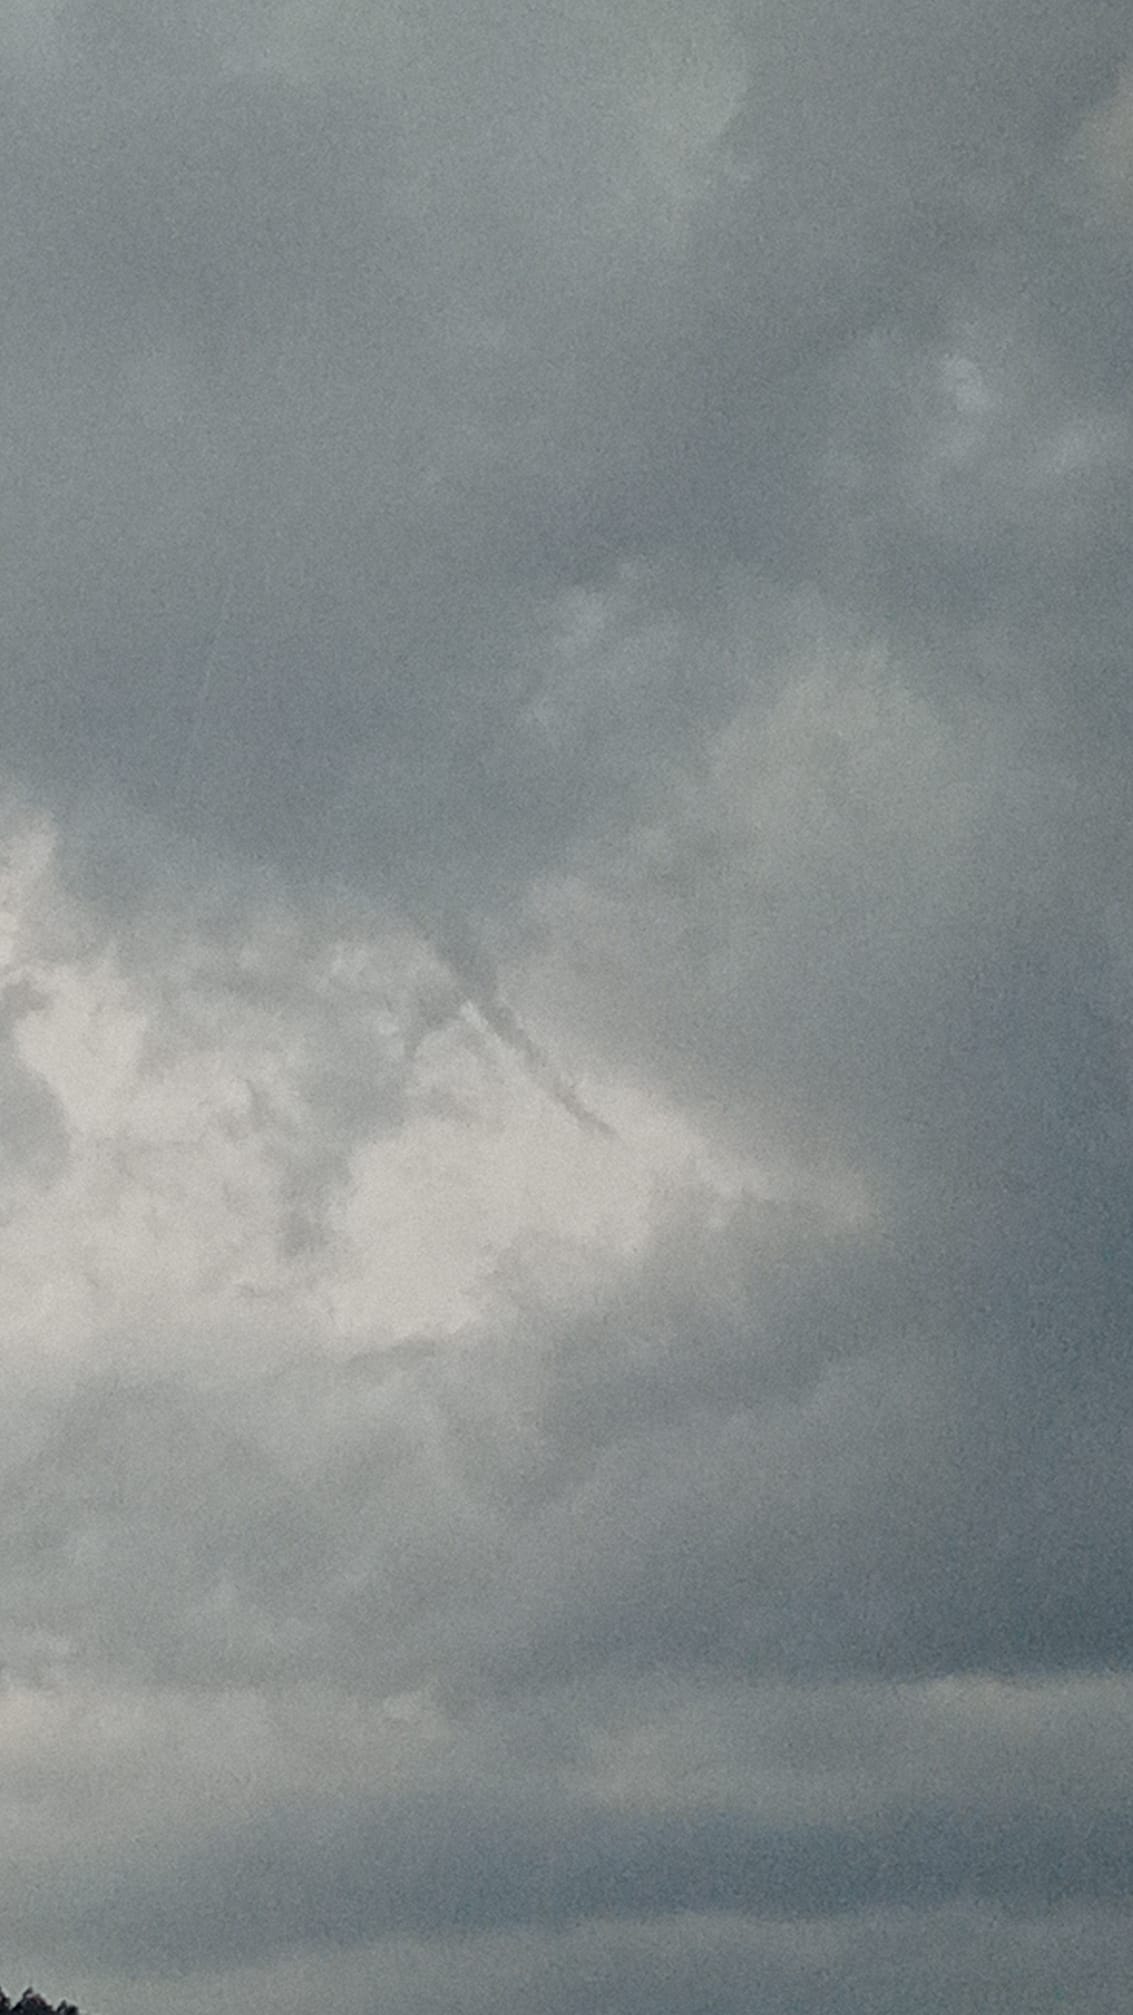 Début de Tuba photographié ce jour ( 15/08) pendant l'orage au dessus de Saint dié  ( Vosges). La qualité est pas très net - 15/08/2021 16:45 - charlotte schuh